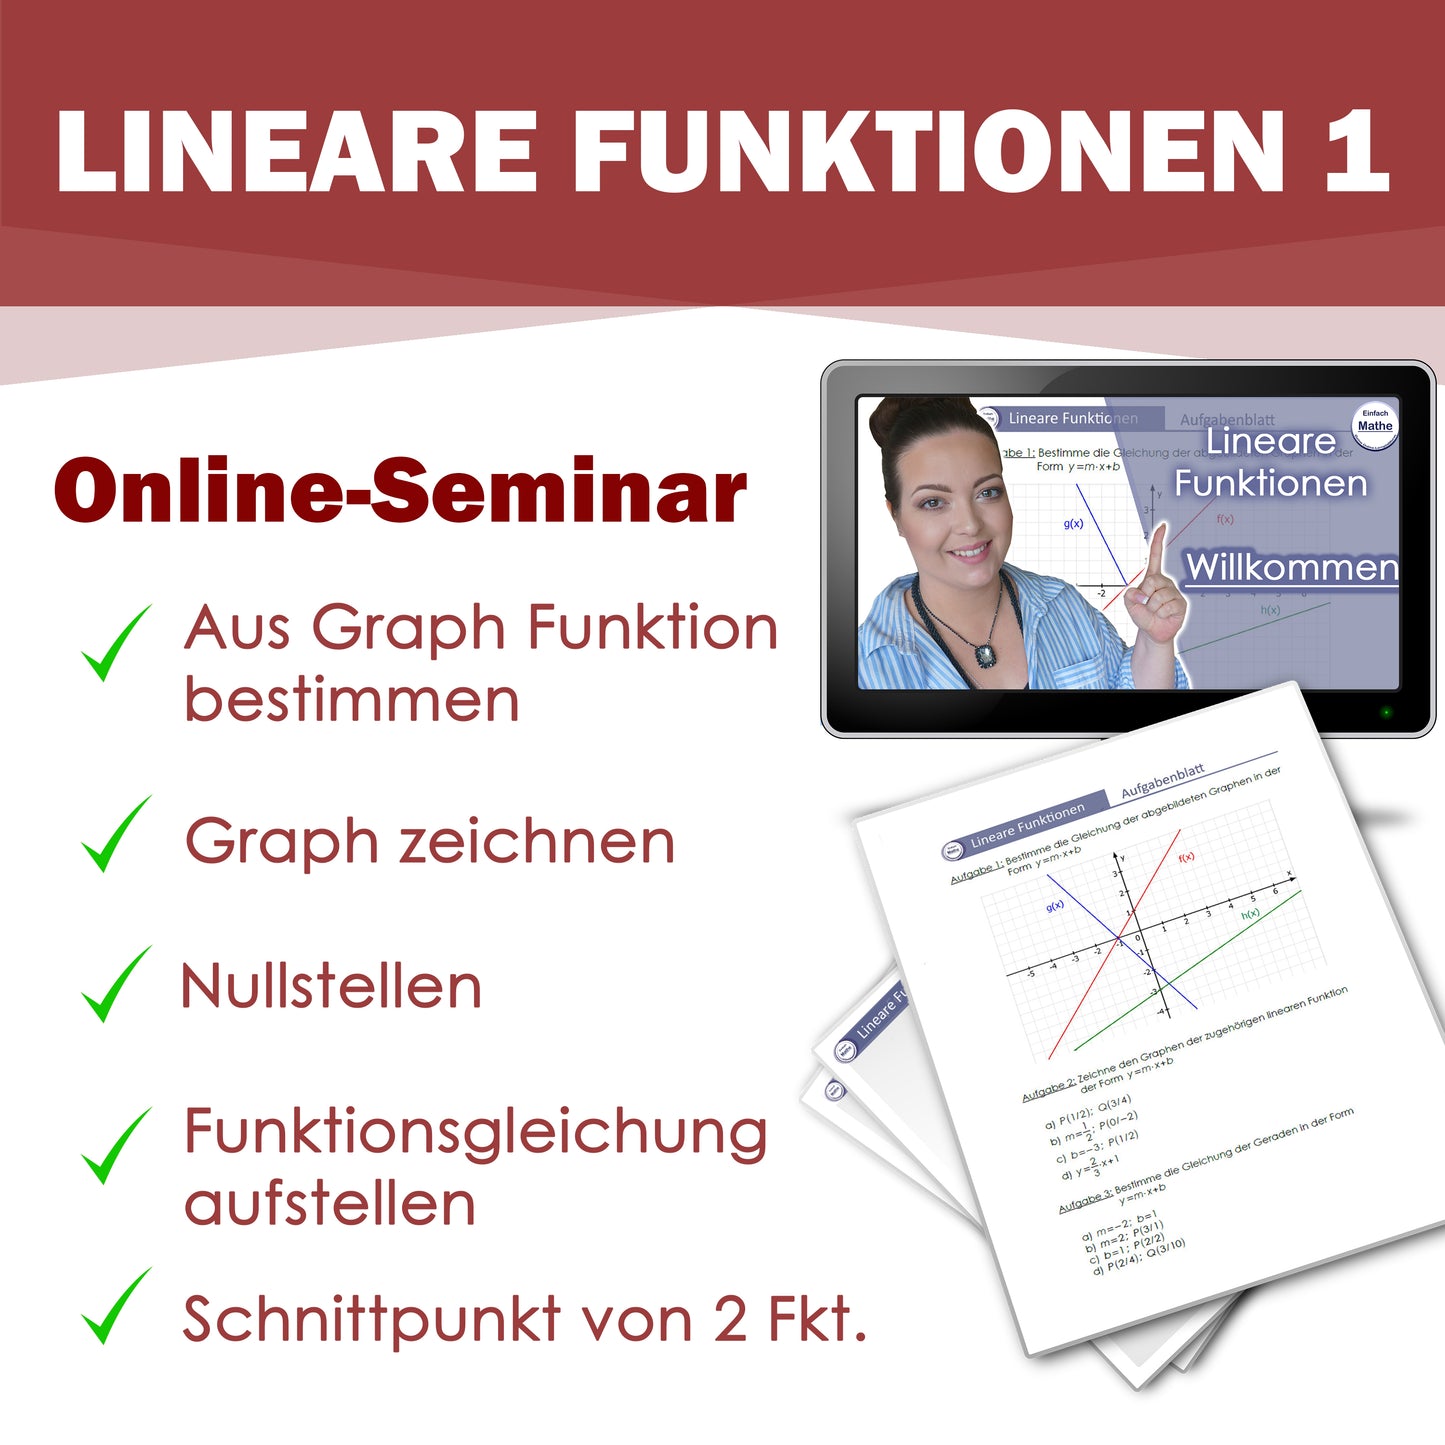 Lineare Funktionen 1 Online-Seminar